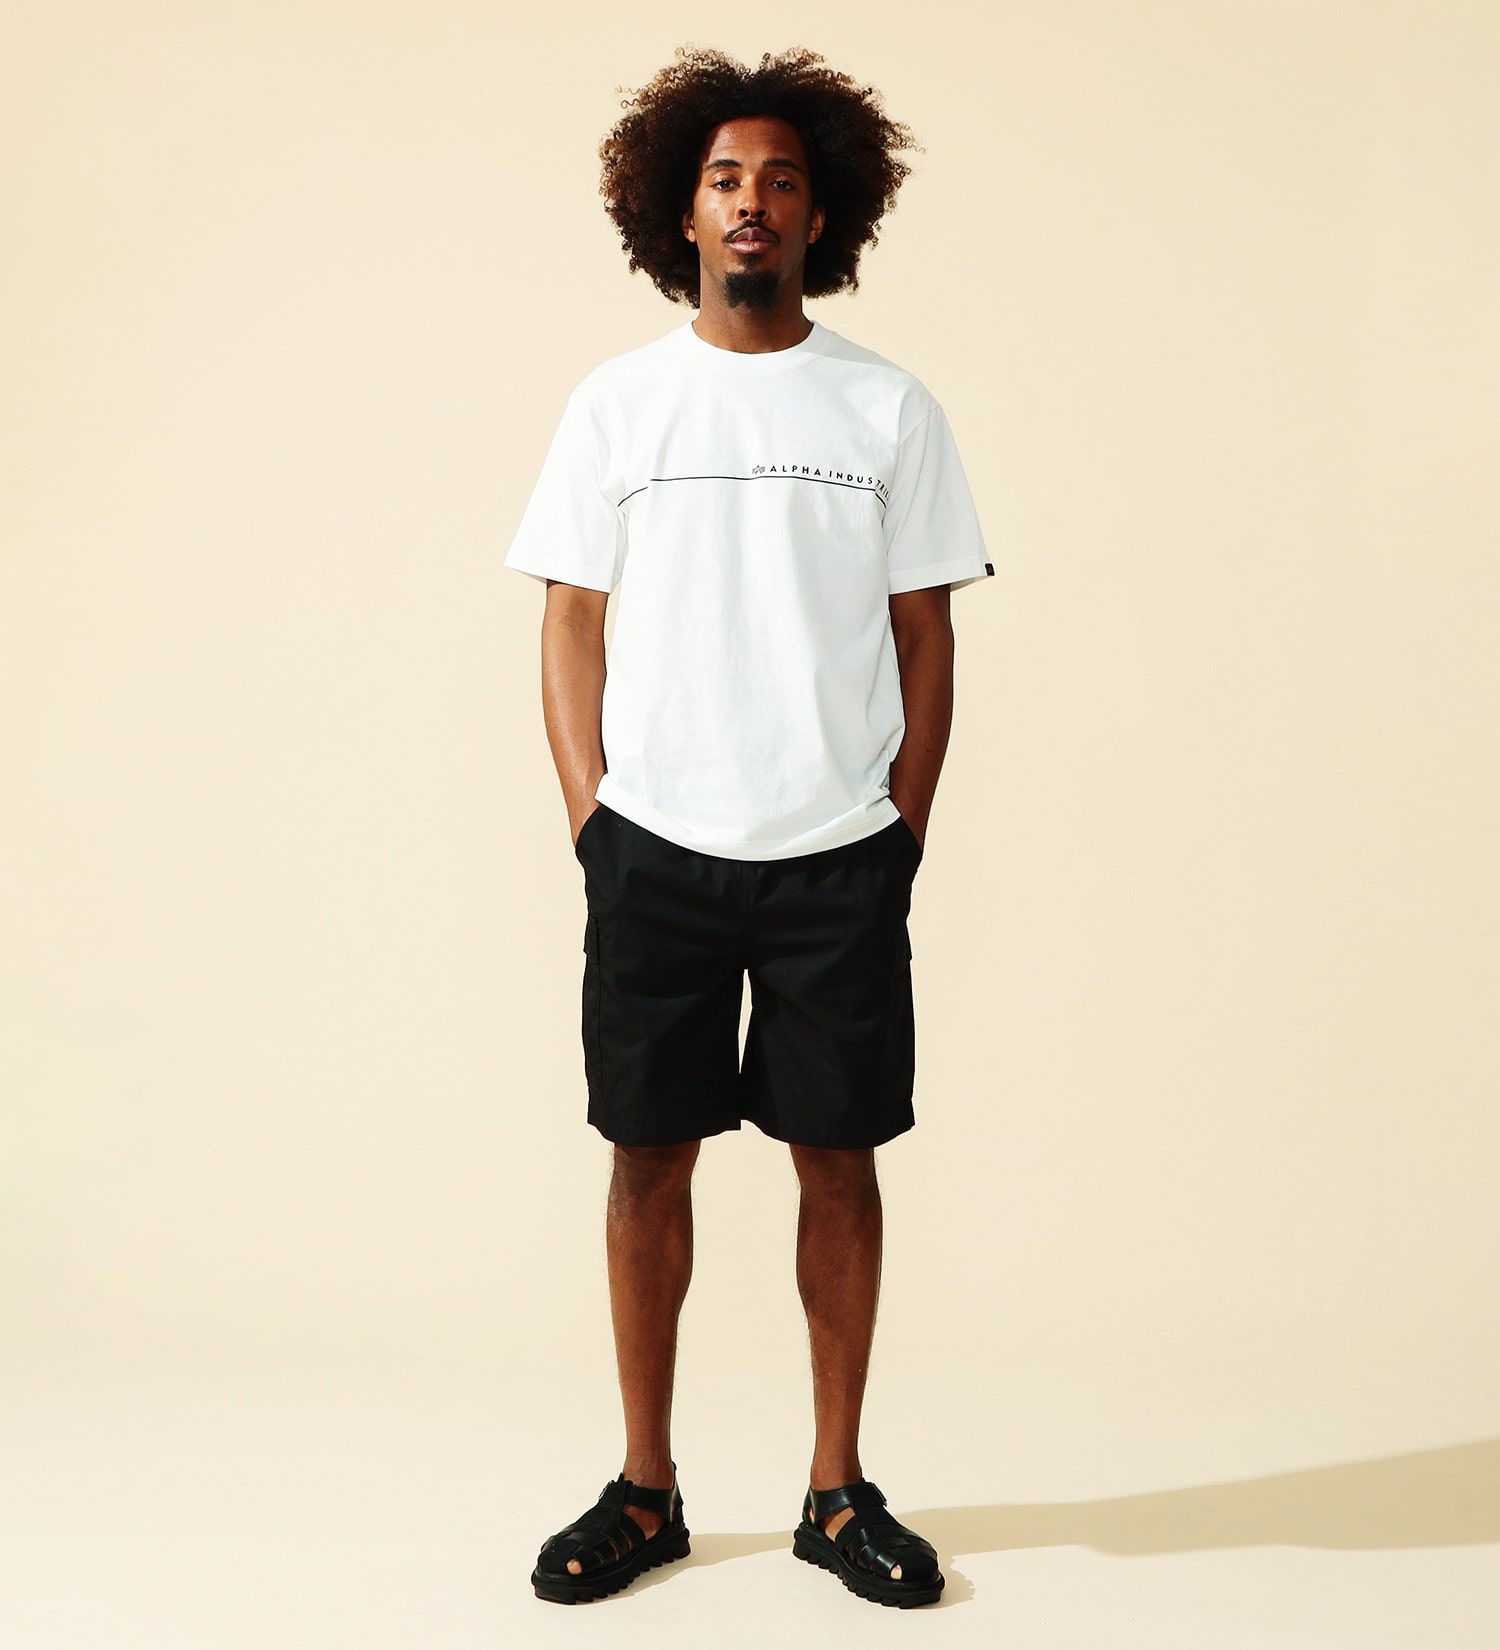 ALPHA(アルファ)のHORIZONTAL ラインプリントTシャツ 半袖|トップス/Tシャツ/カットソー/メンズ|ホワイト